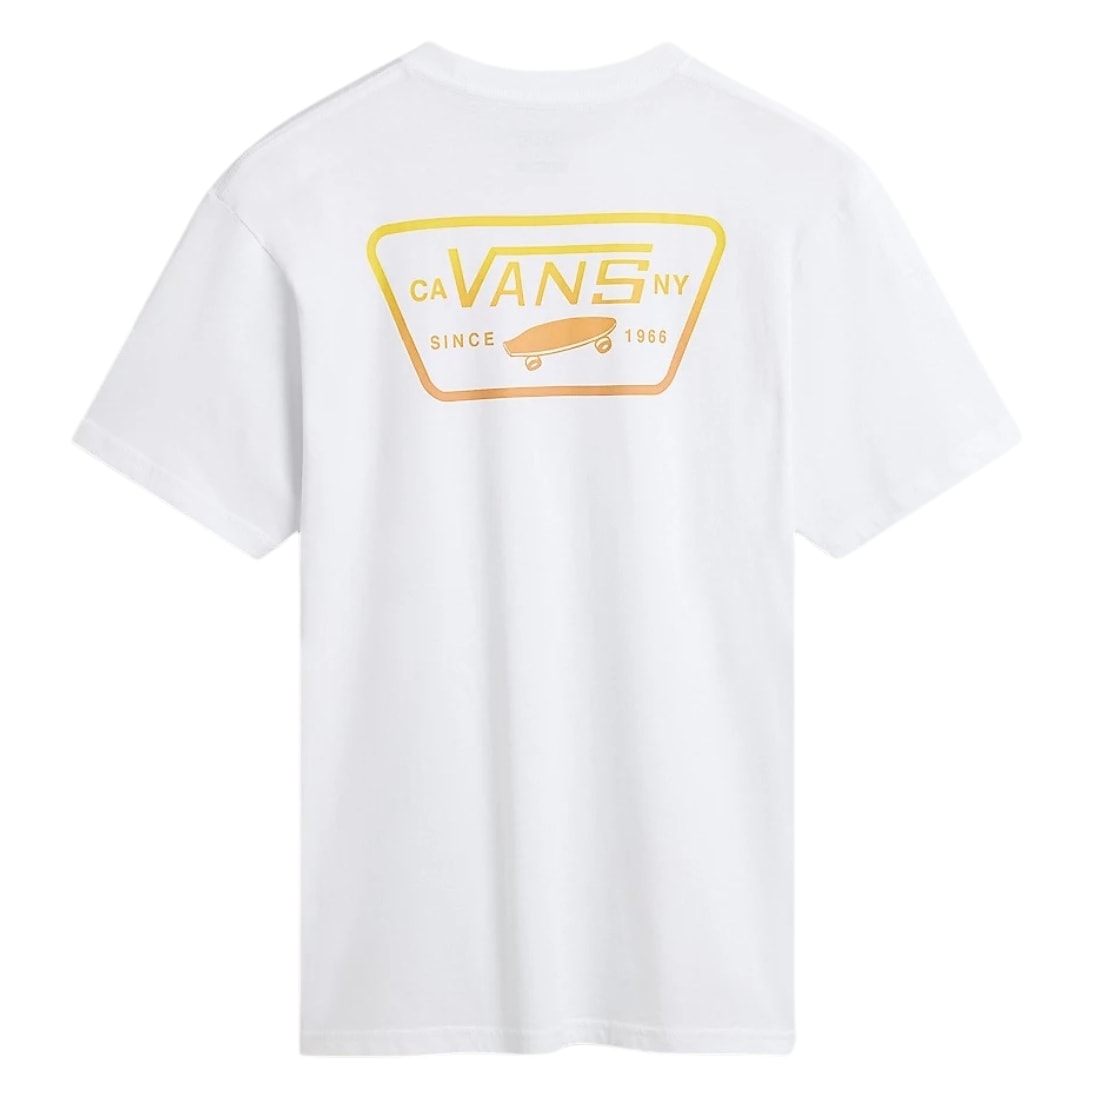 Vans Full Patch Back T-Shirt - White/Copper Tan - Mens Skate Brand T-Shirt by Vans